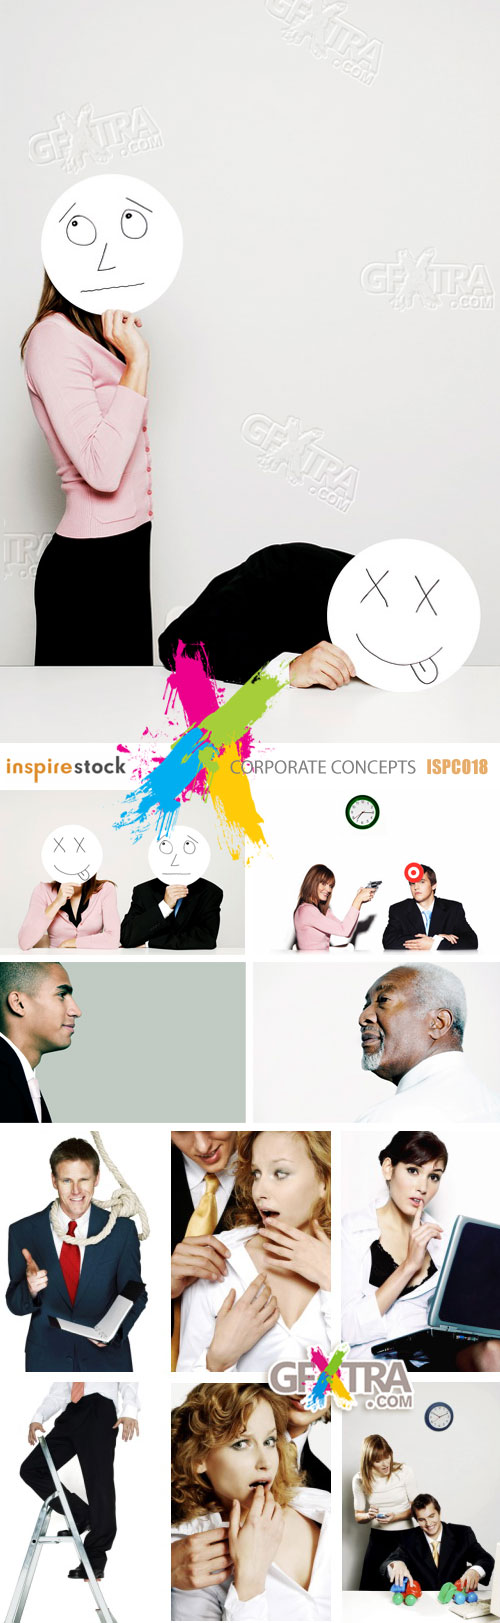 InspireStock ISPC018 Corporate Concepts